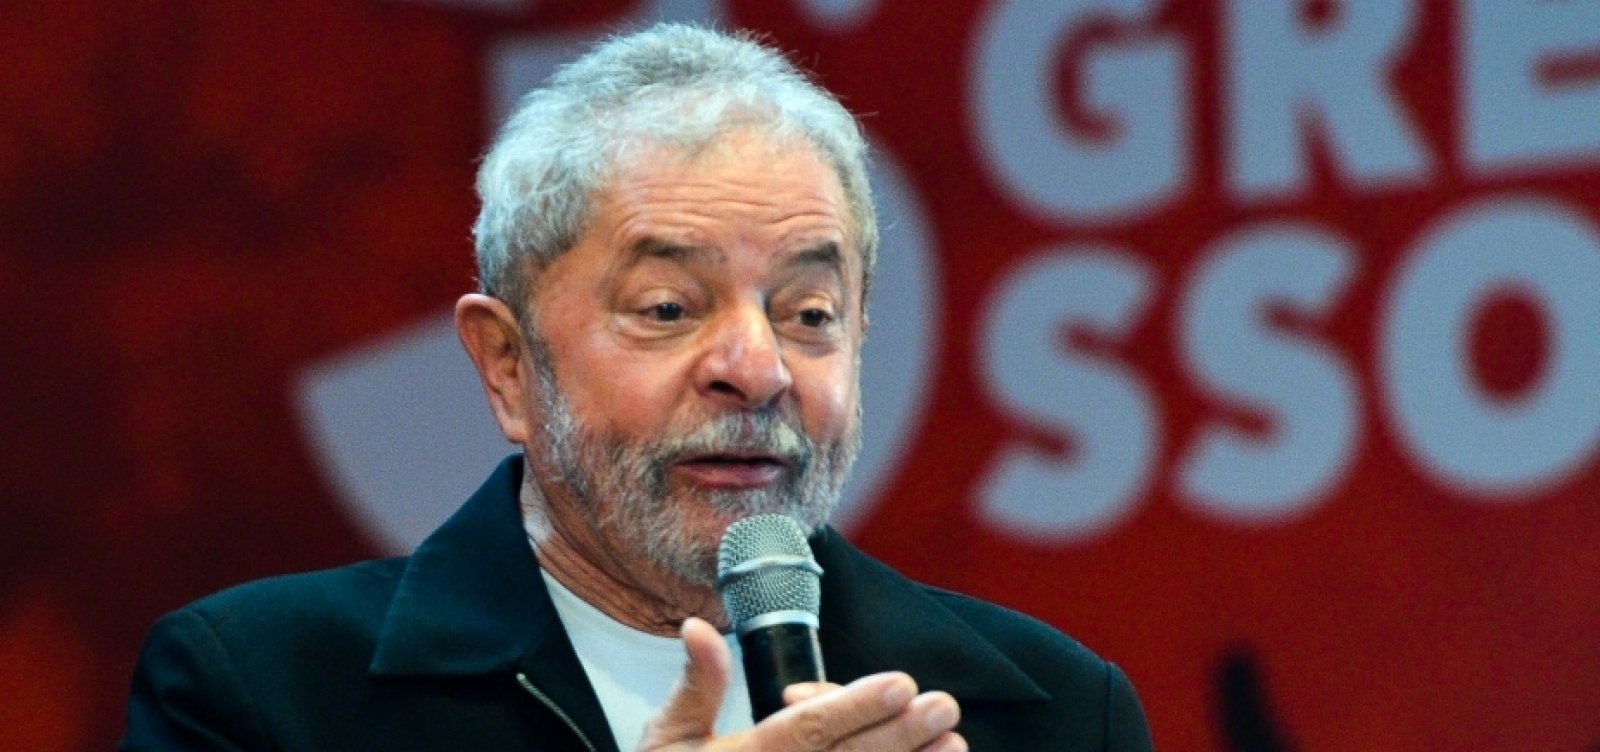 Ministro do TSE nega pedido para excluir vídeo em que Lula chama Bolsonaro de mentiroso